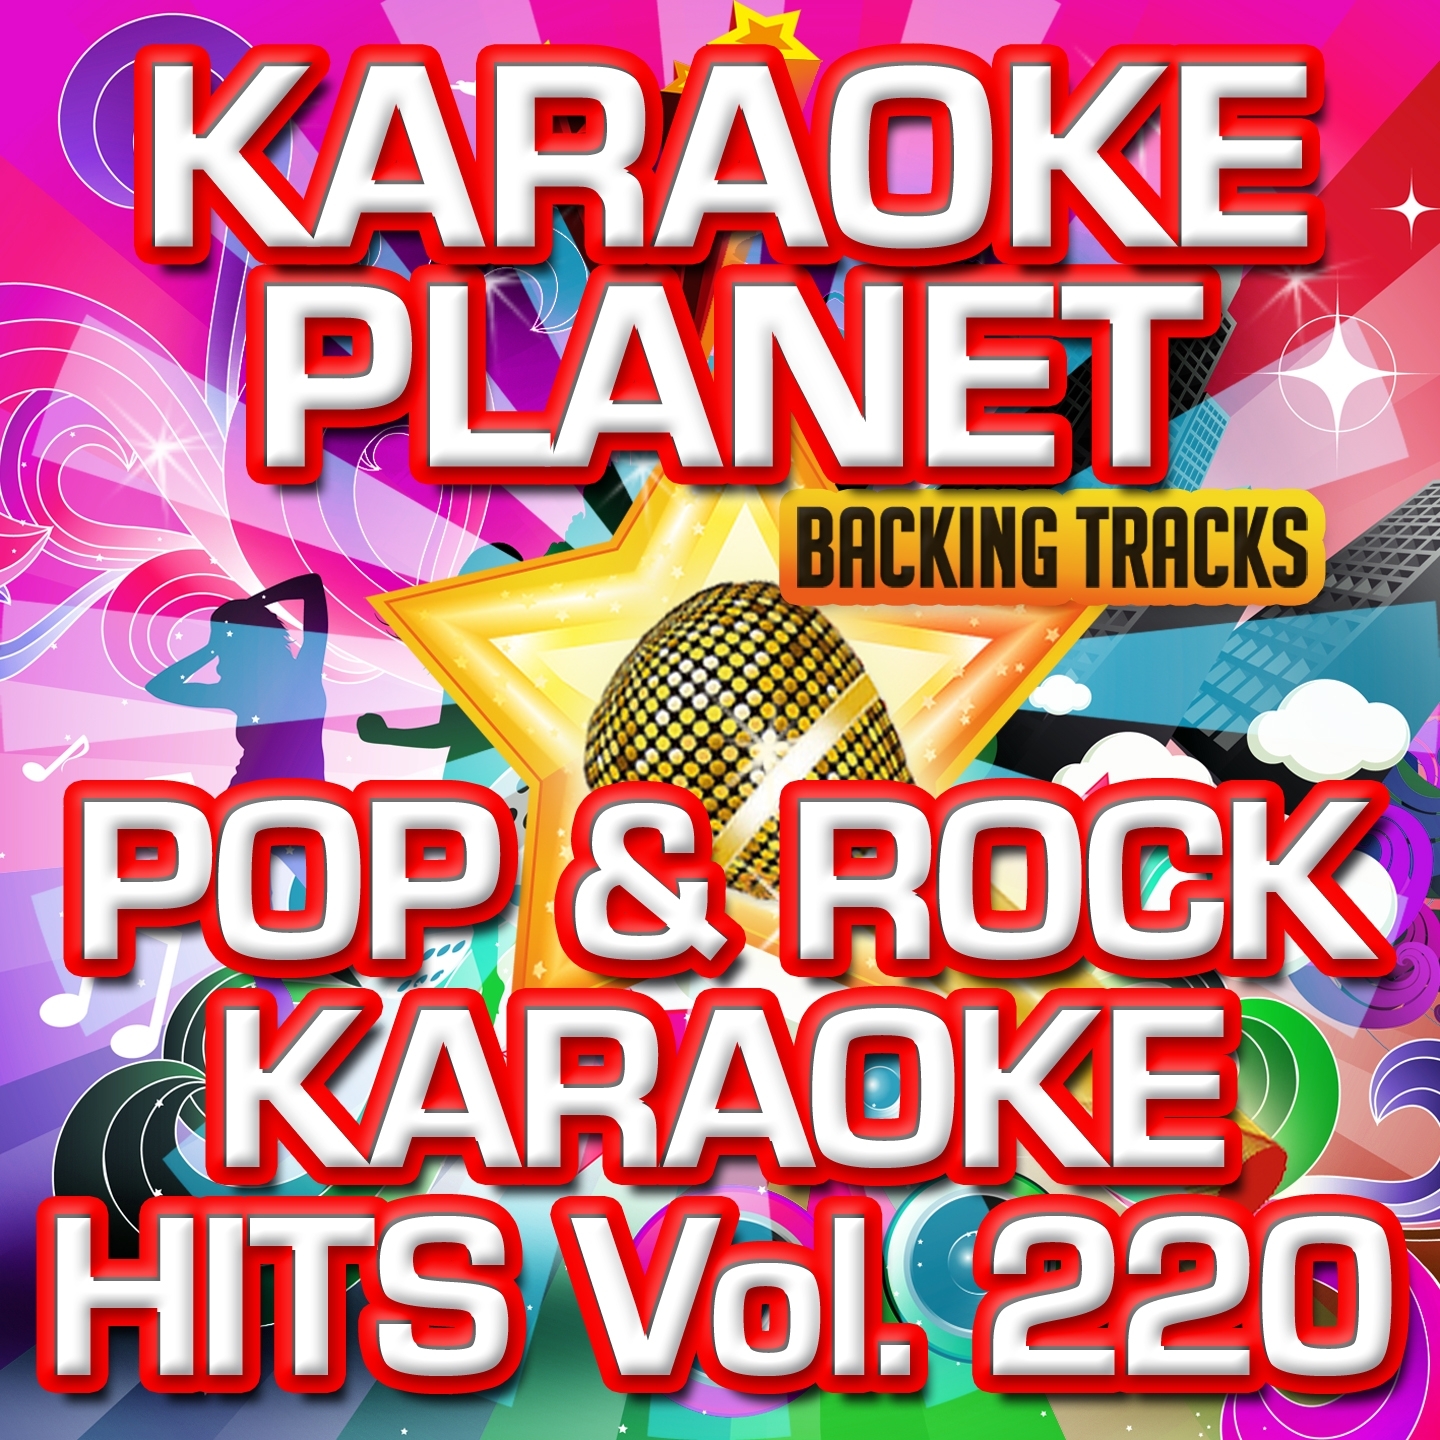 Pop & Rock Karaoke Hits, Vol. 220